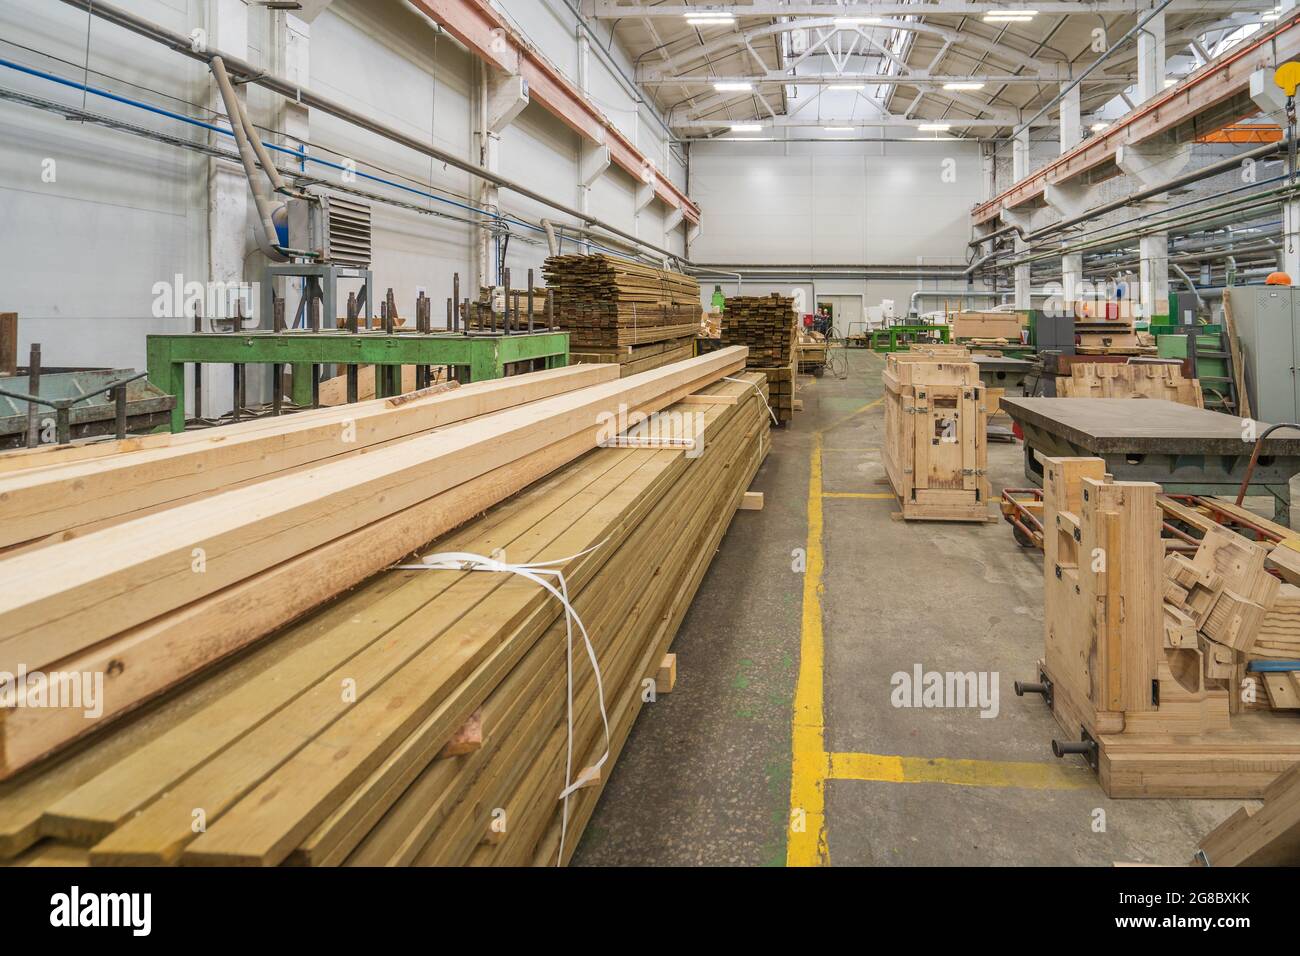 Intérieur typique d'une usine de travail du bois, grand atelier avec machines automatisées et piles de bois. Banque D'Images